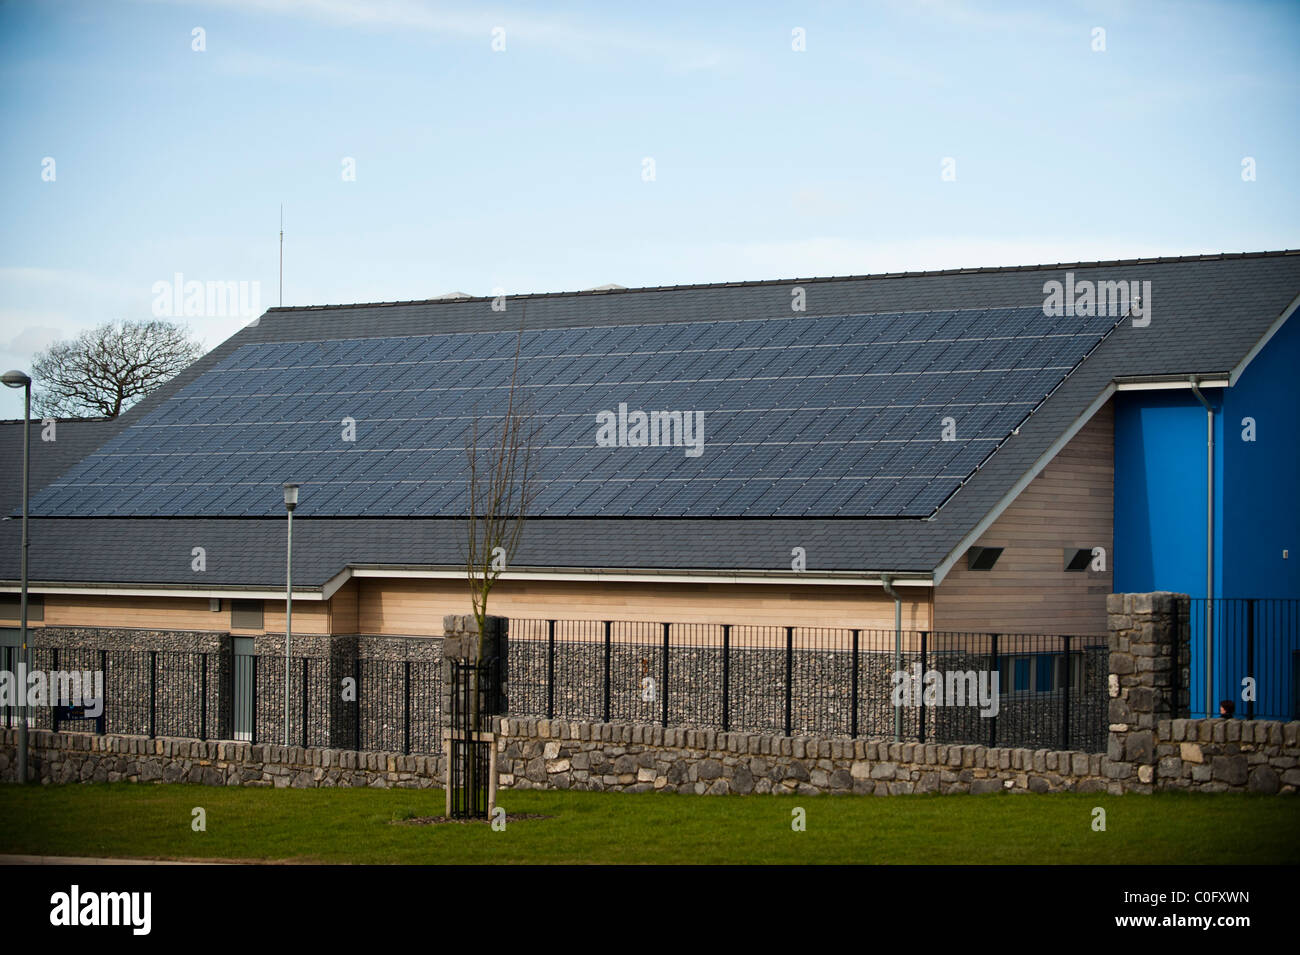 Los paneles solares fotovoltaicos en el techo de una escuela en Llangefni, al norte de Gales, Reino Unido Foto de stock